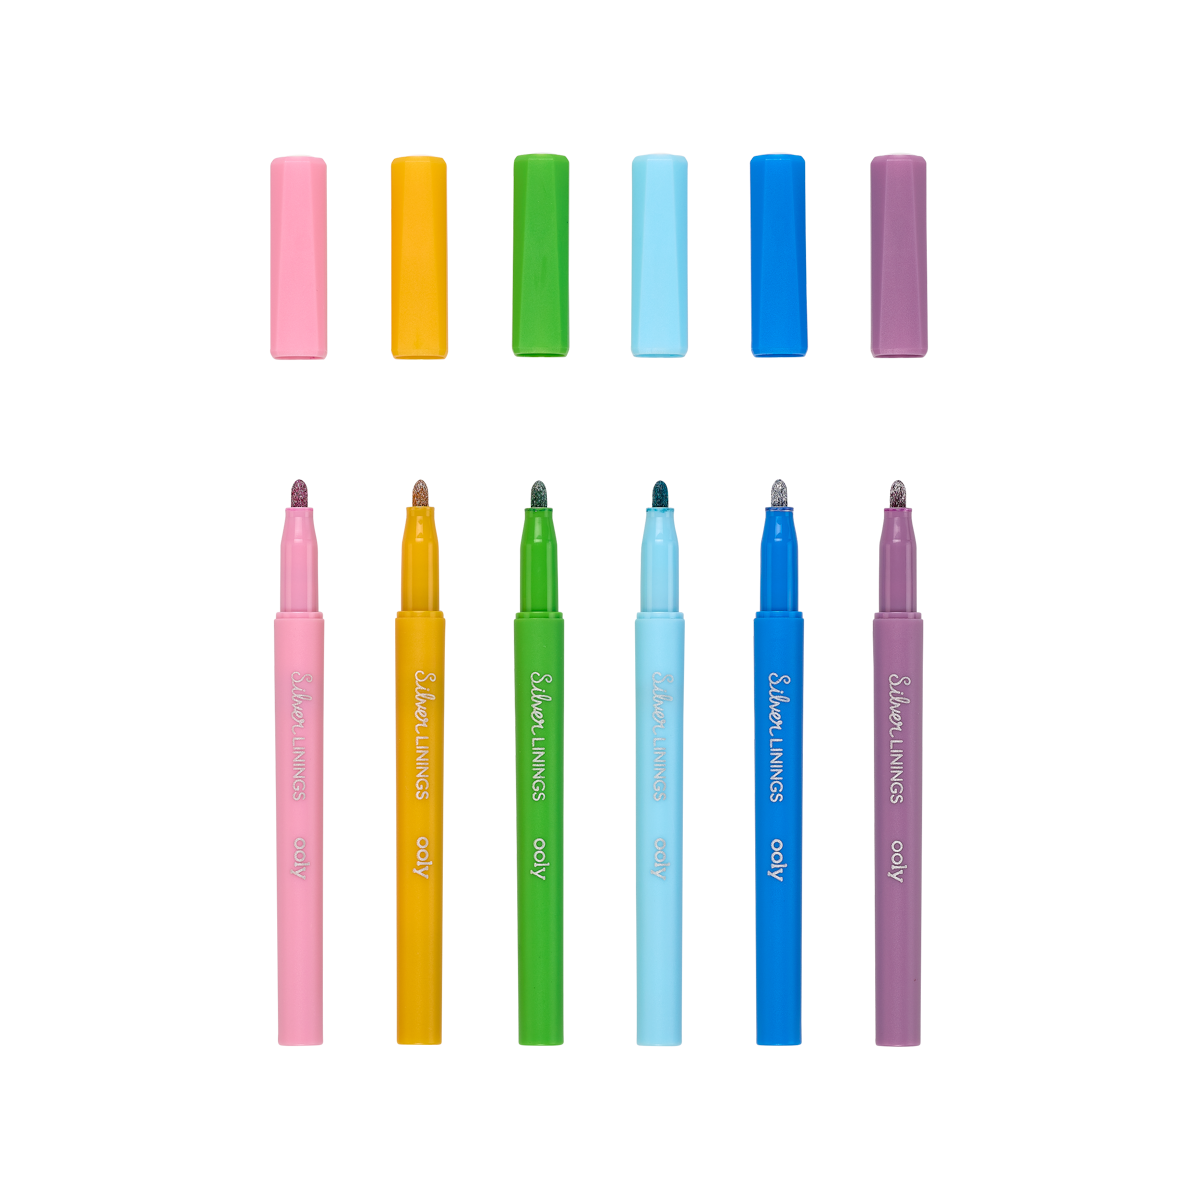 outline markers – set of 16 outline marker pens